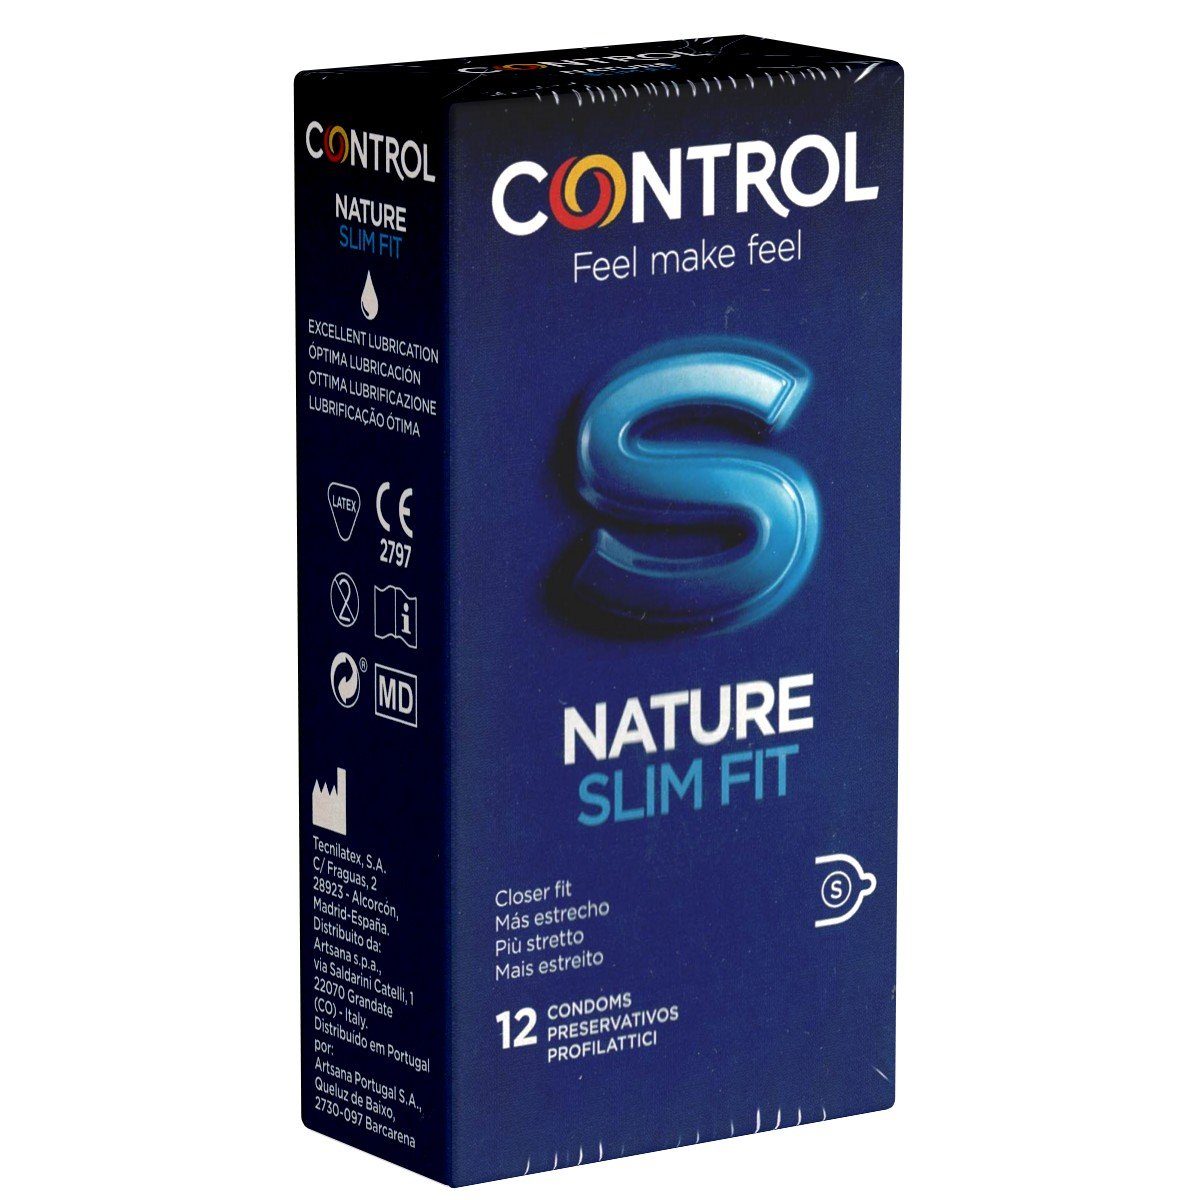 CONTROL CONDOMS Kondome Nature Slim Fit Packung mit, 12 St., enge Kondome mit gerader Passform, spanische Kondome für richtig enges Vergnügen